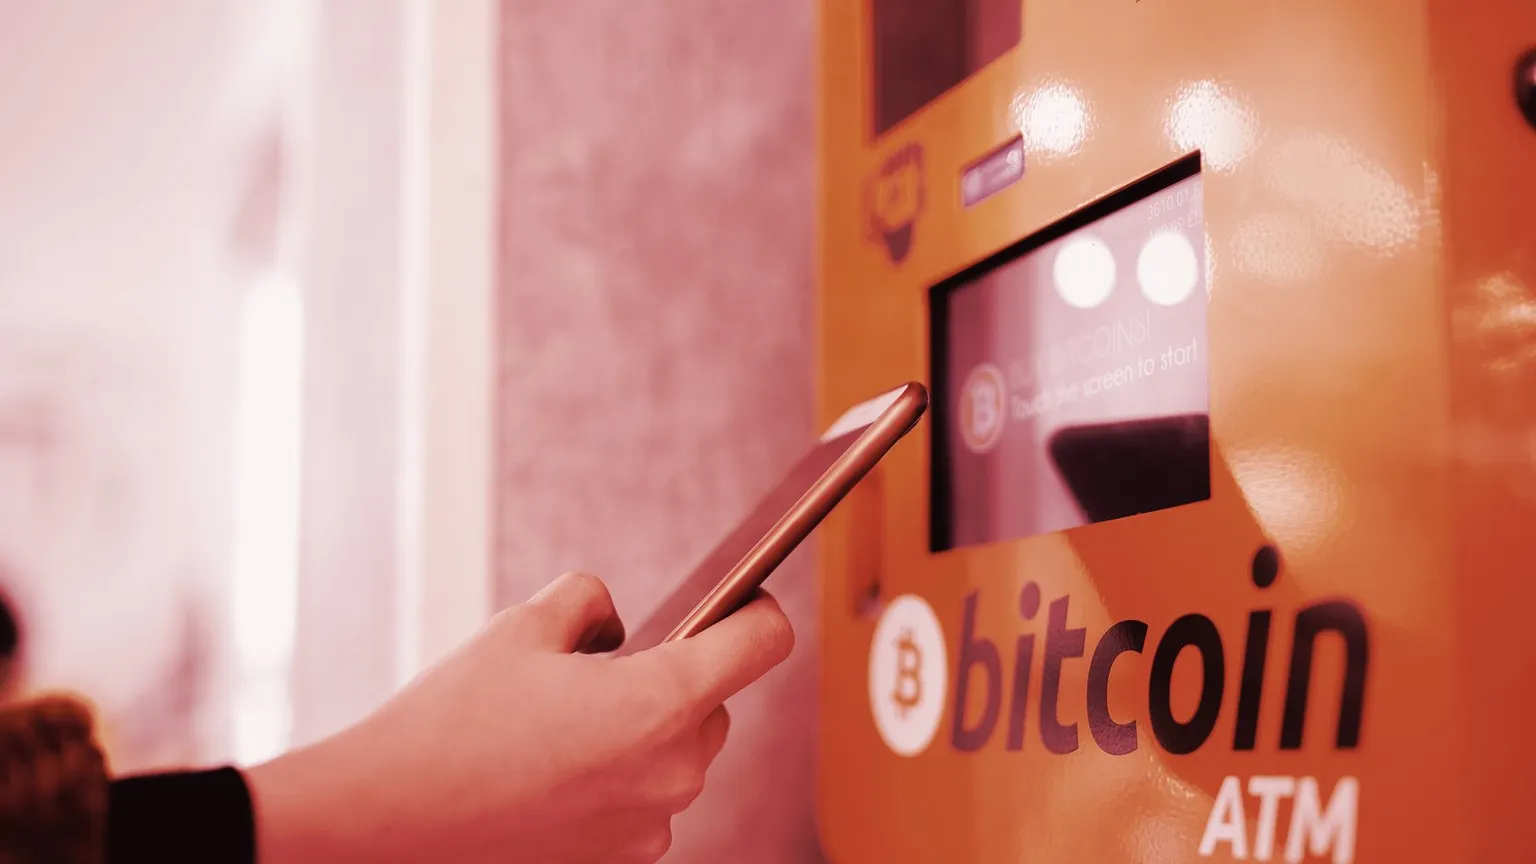 Los cajeros automáticos de Bitcoin permiten a los usuarios comprar y vender Bitcoin a cambio de dinero. Imagen: Shutterstock